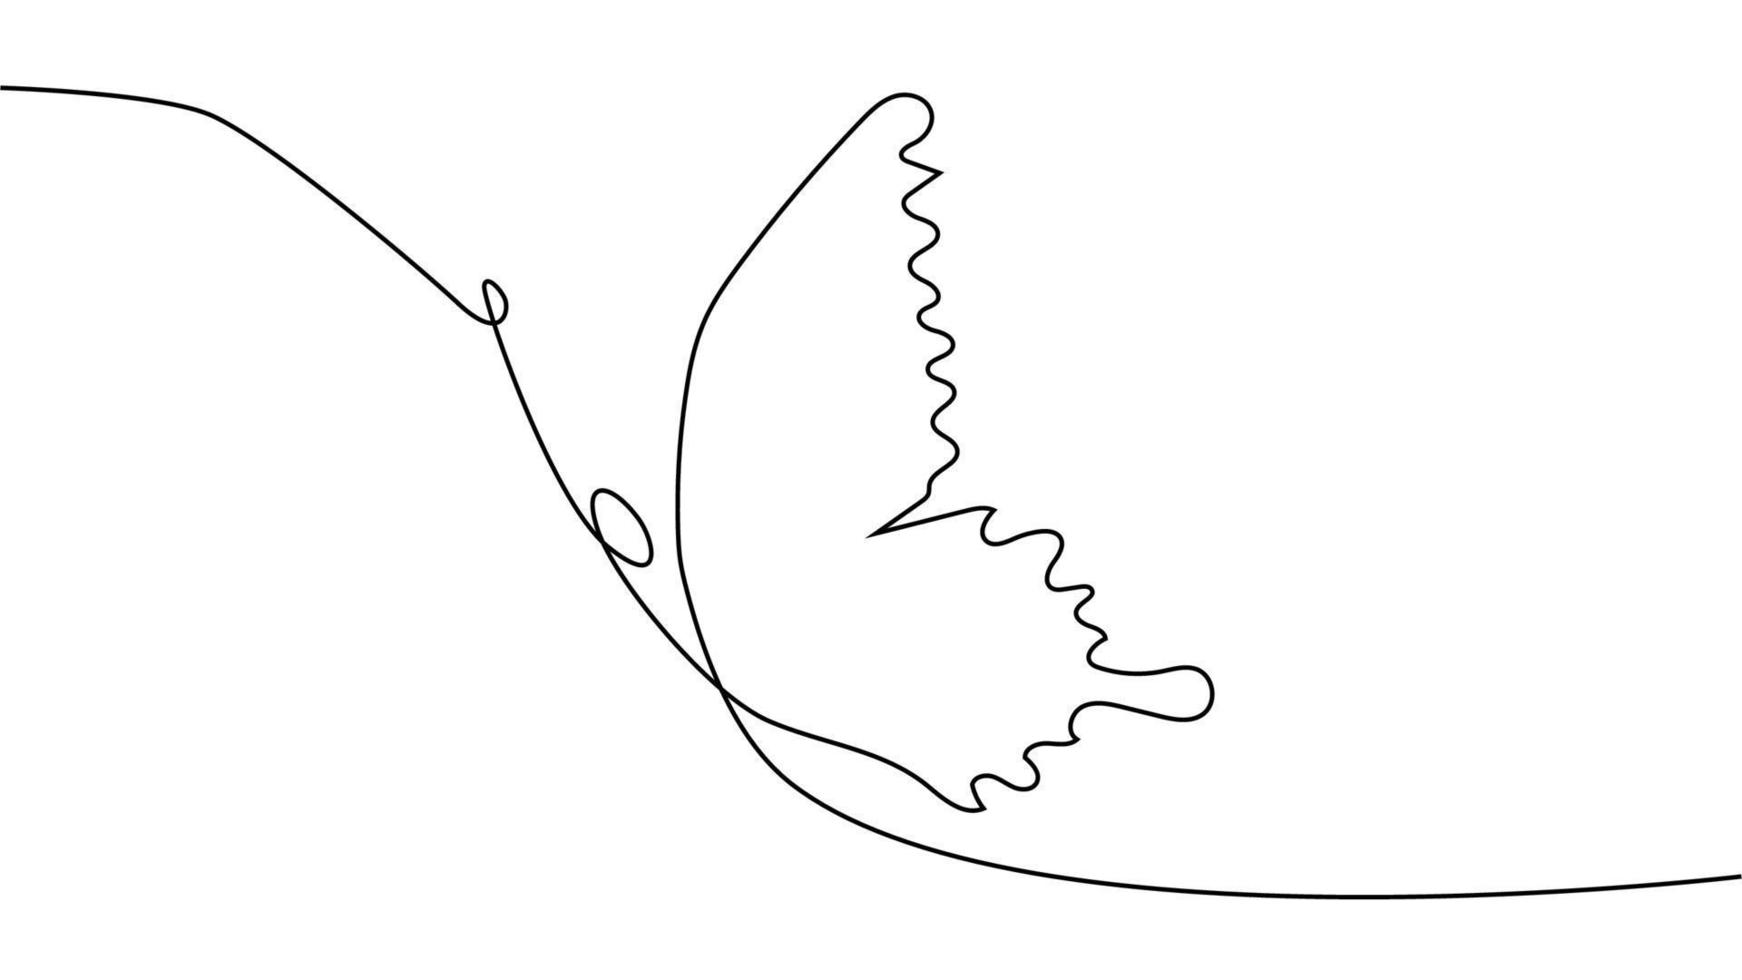 dibujo continuo de una línea. logotipo de mariposa voladora. ilustración en blanco y negro. concepto de logotipo, tarjeta, pancarta vector